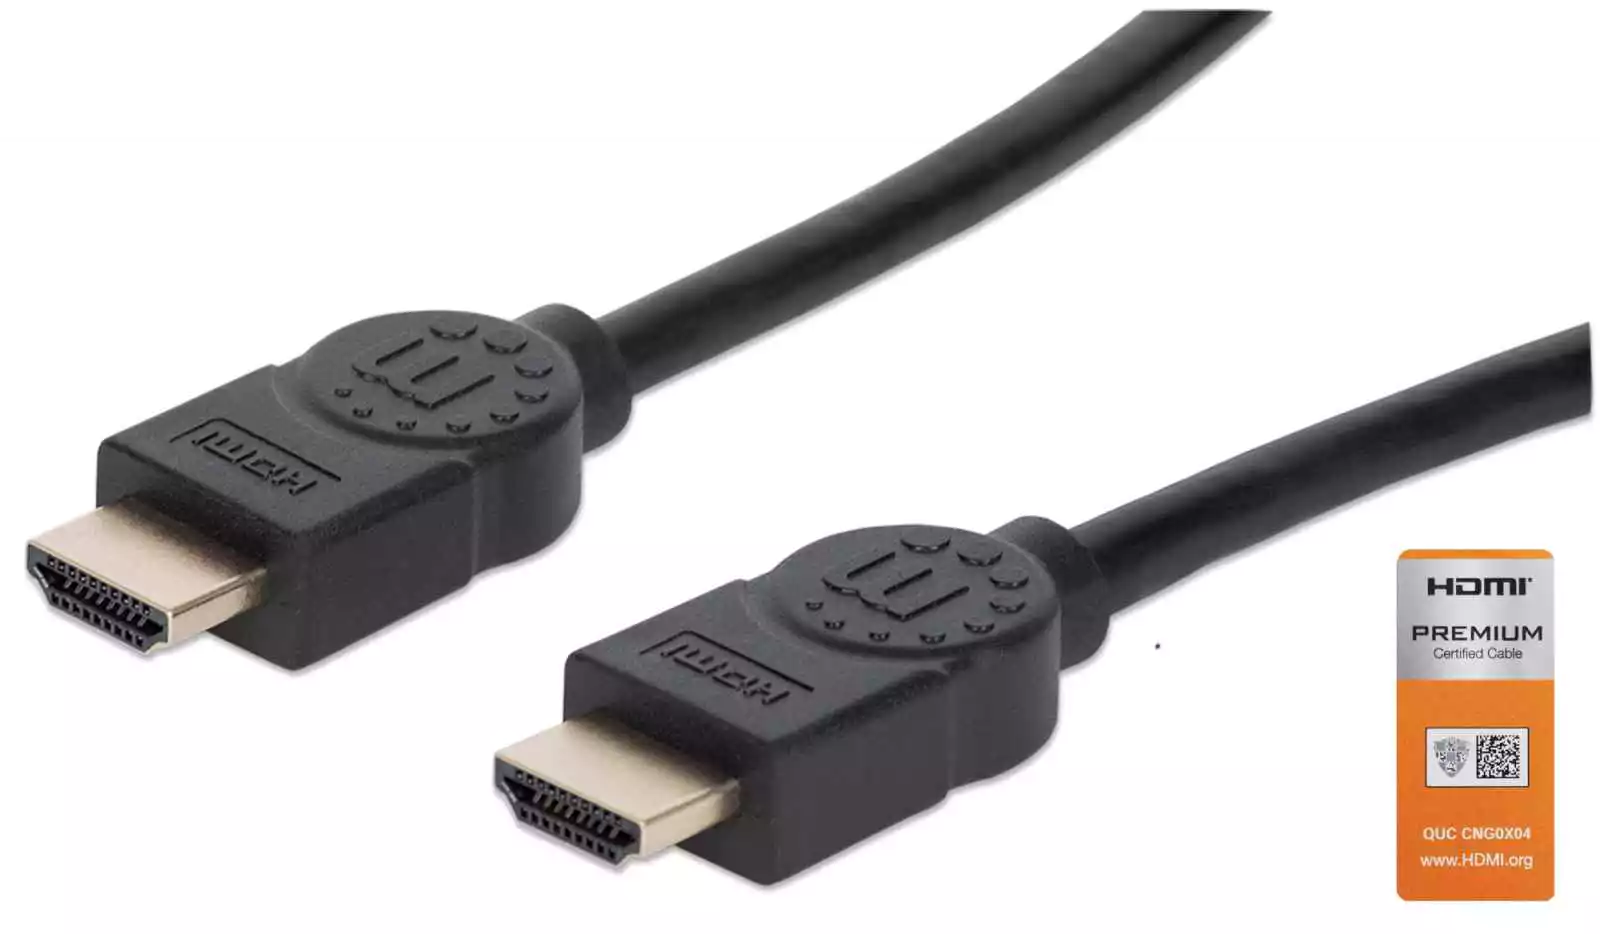 Cable HDMI 2.0 Aluminio Premium 15 Metros